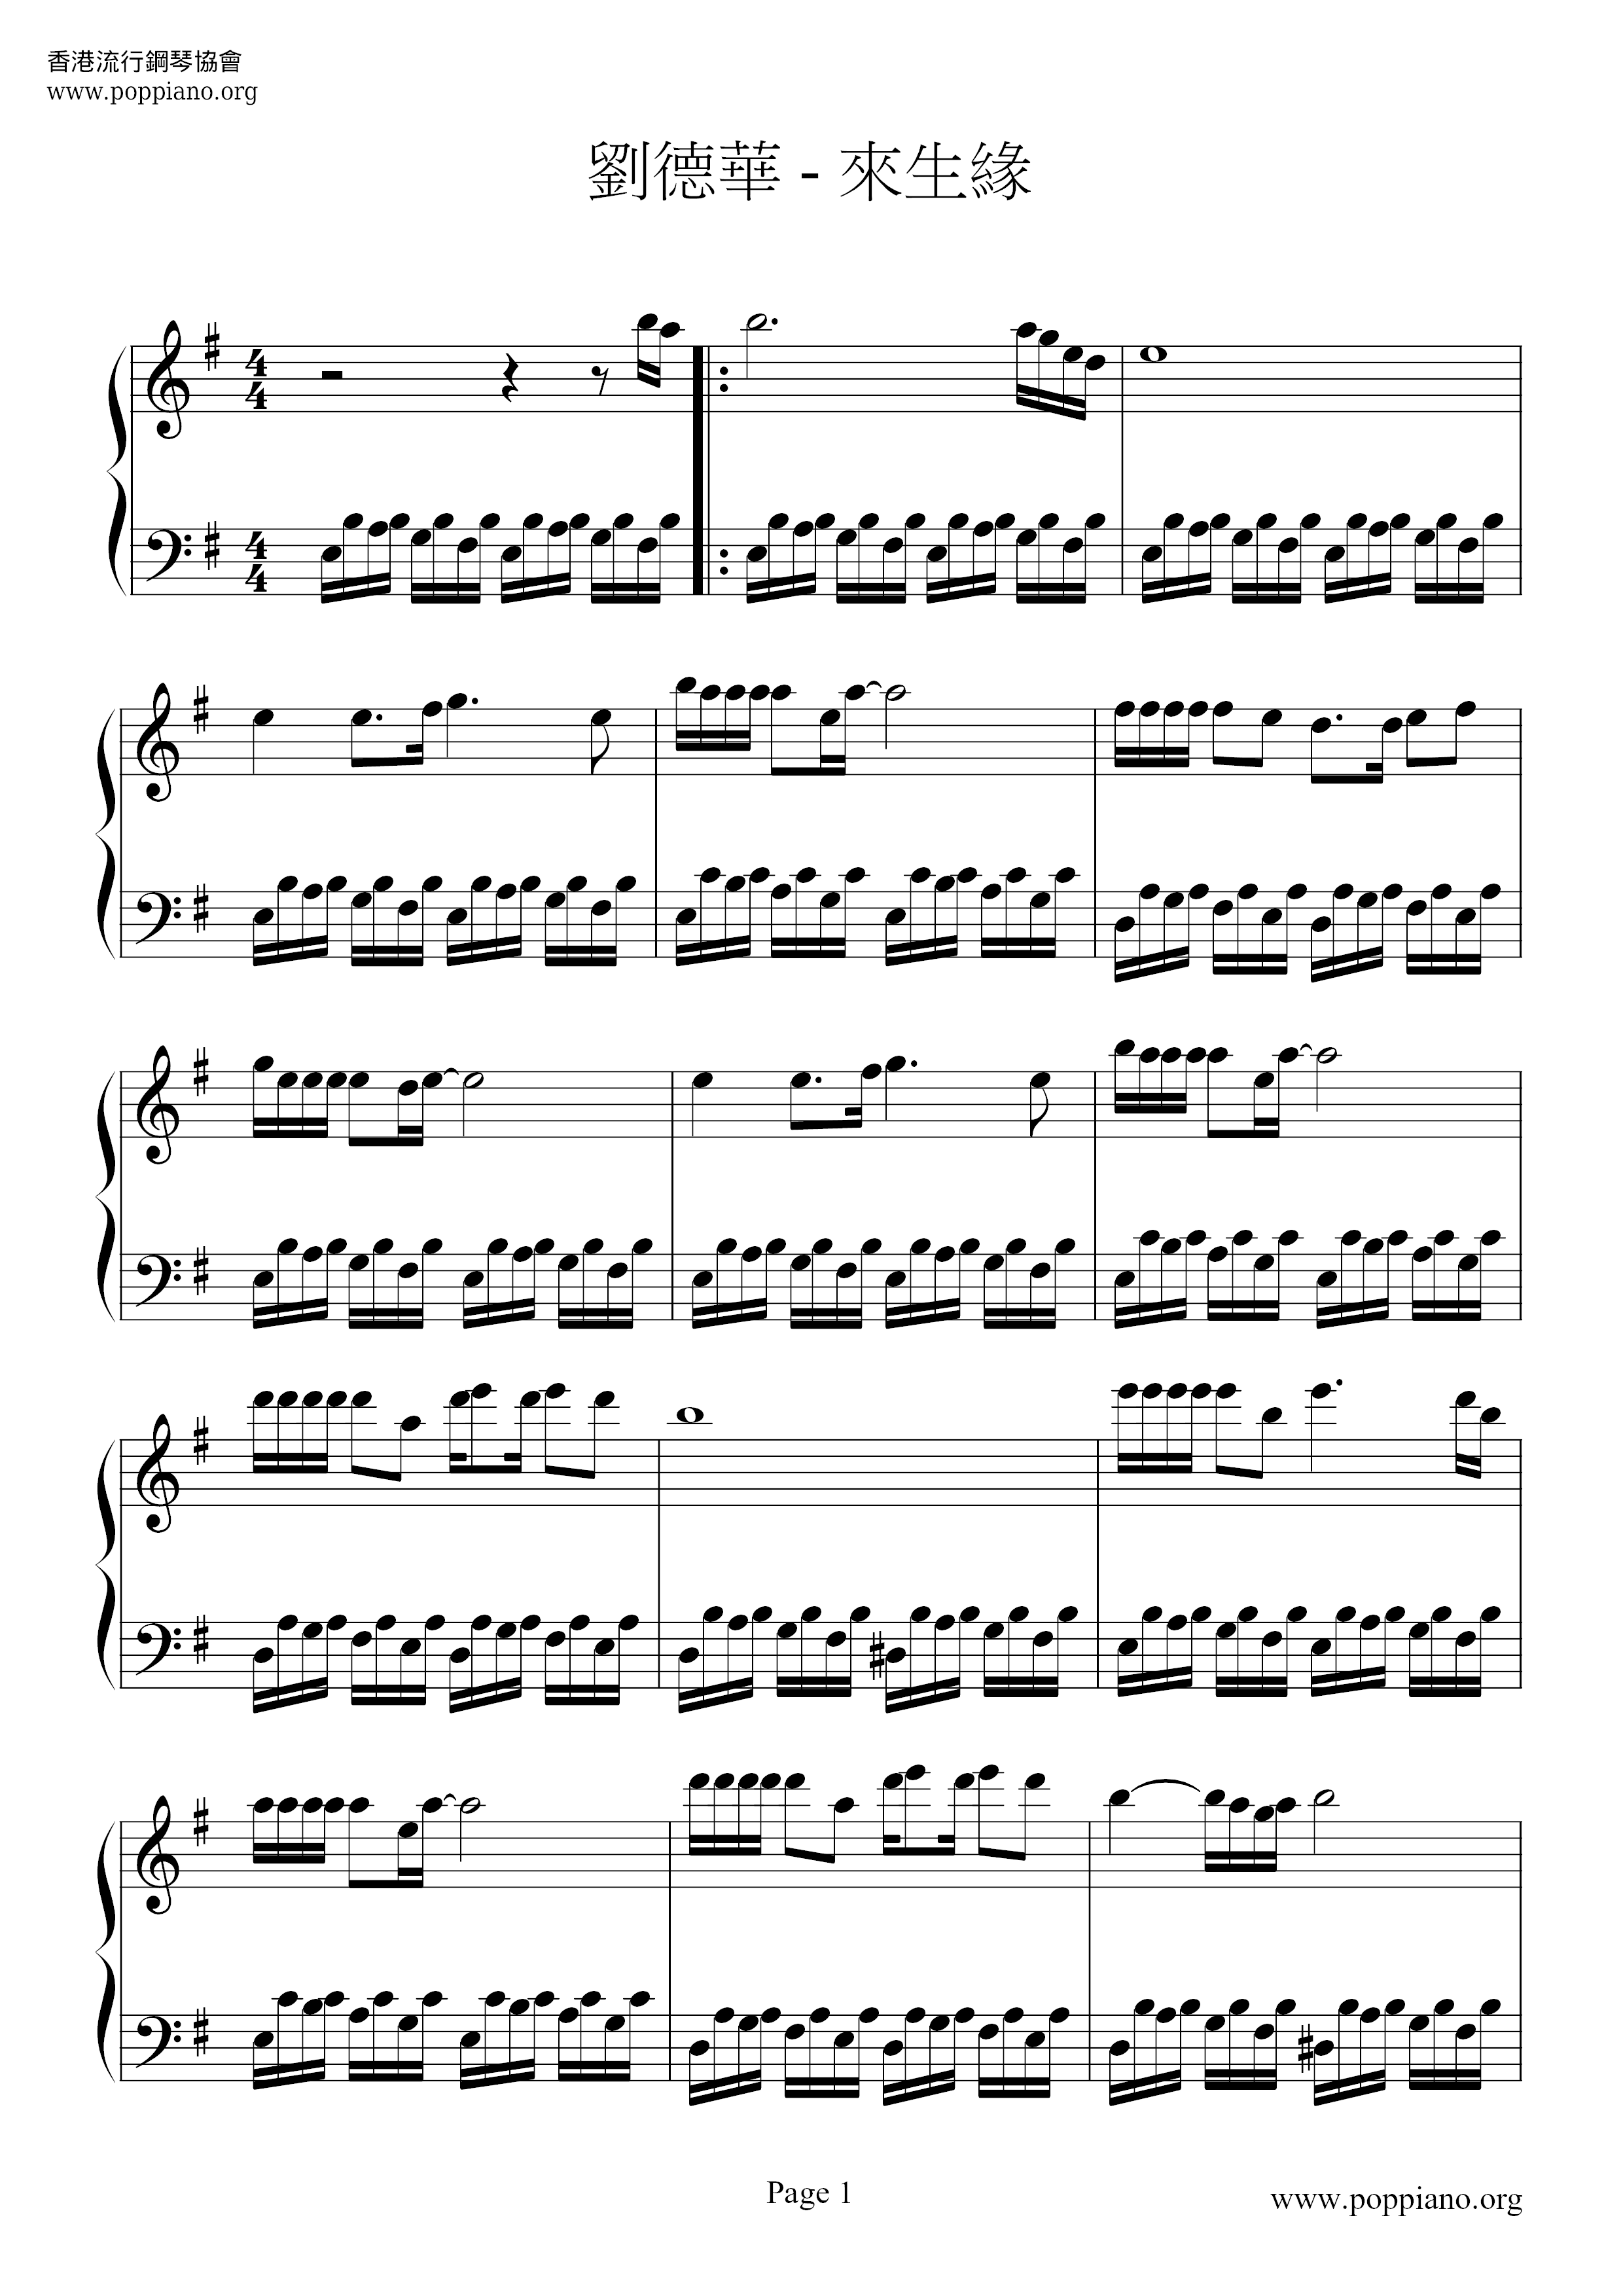 Lai Sheng Yuan Score